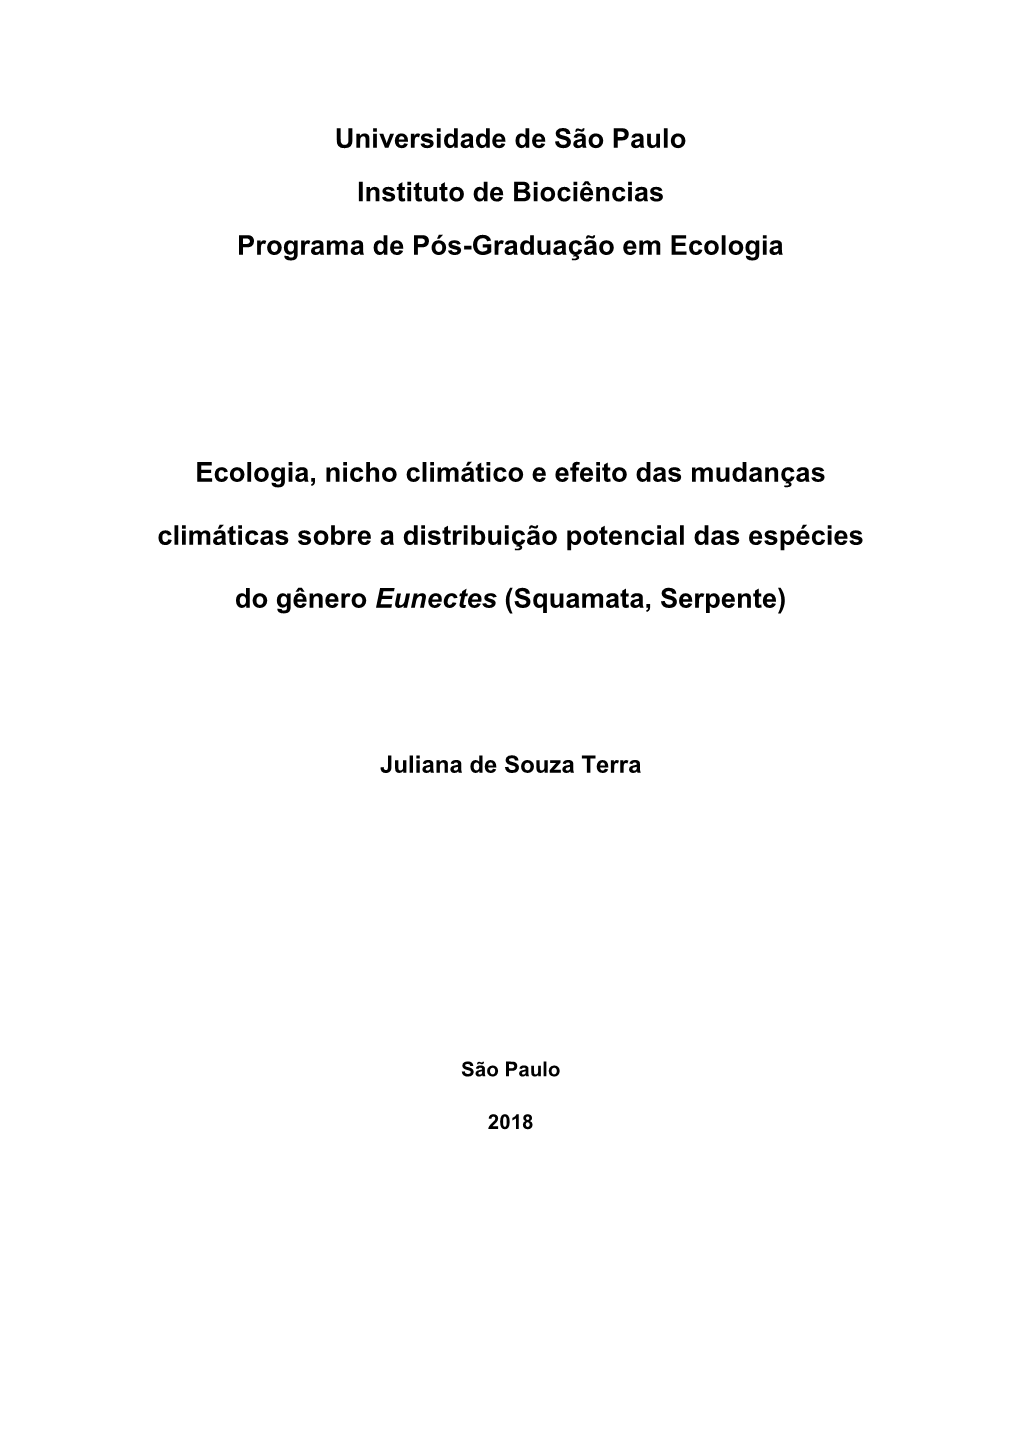 Universidade De São Paulo Instituto De Biociências Programa De Pós-Graduação Em Ecologia Ecologia, Nicho Climático E